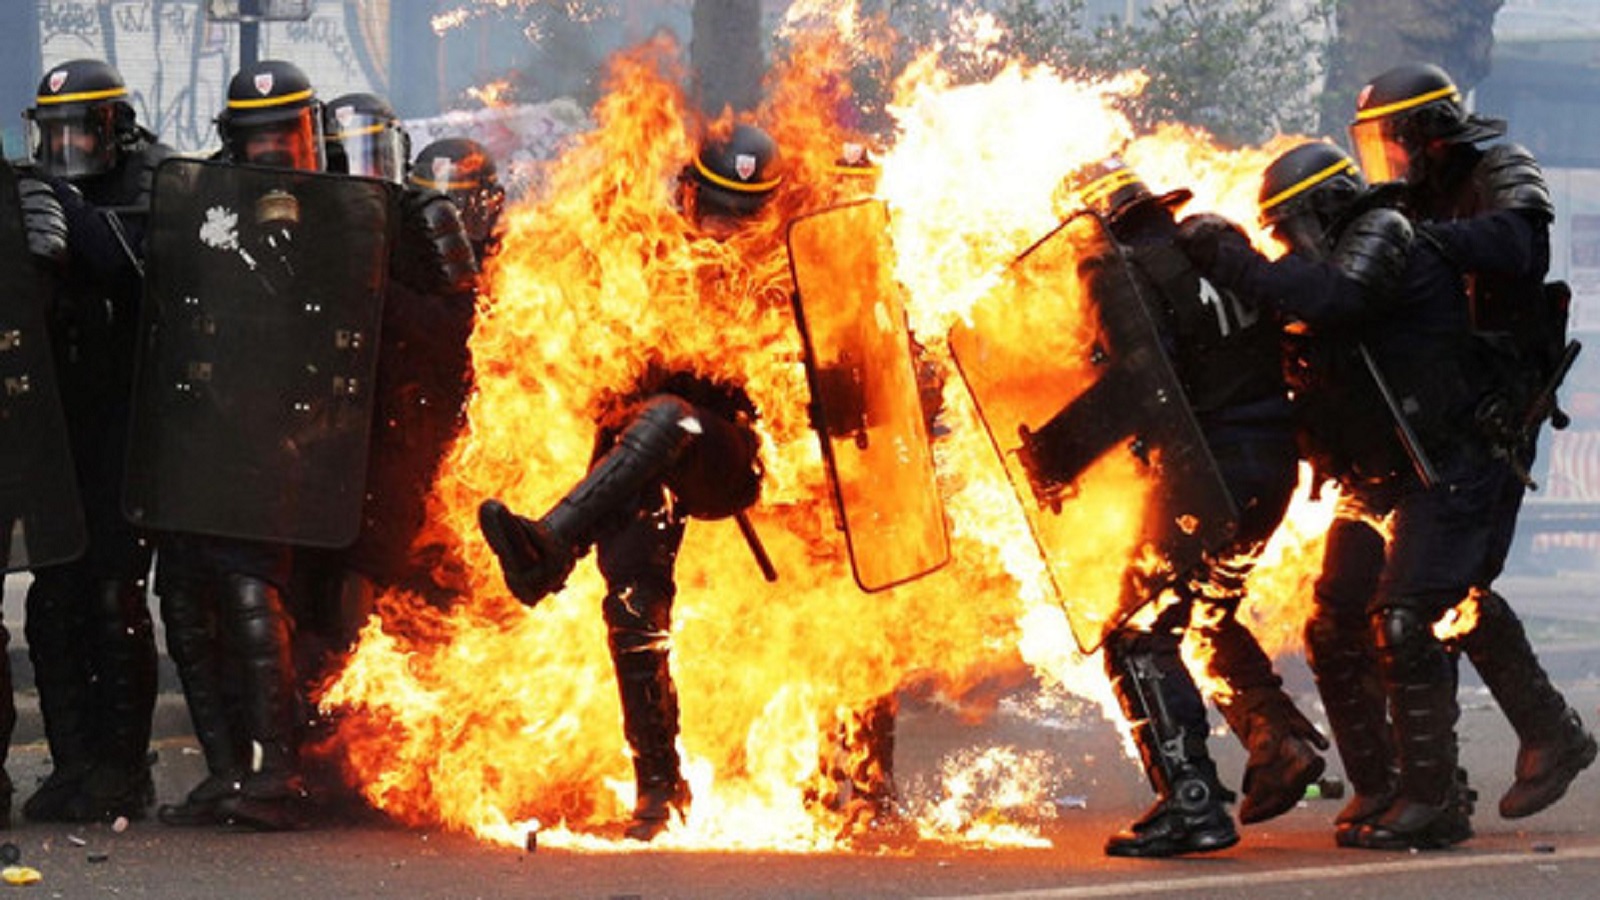 زكريا عبدالكافي لـ"المدن":سعيد بنجاحي وحزين على الشرطي الفرنسي المحترق